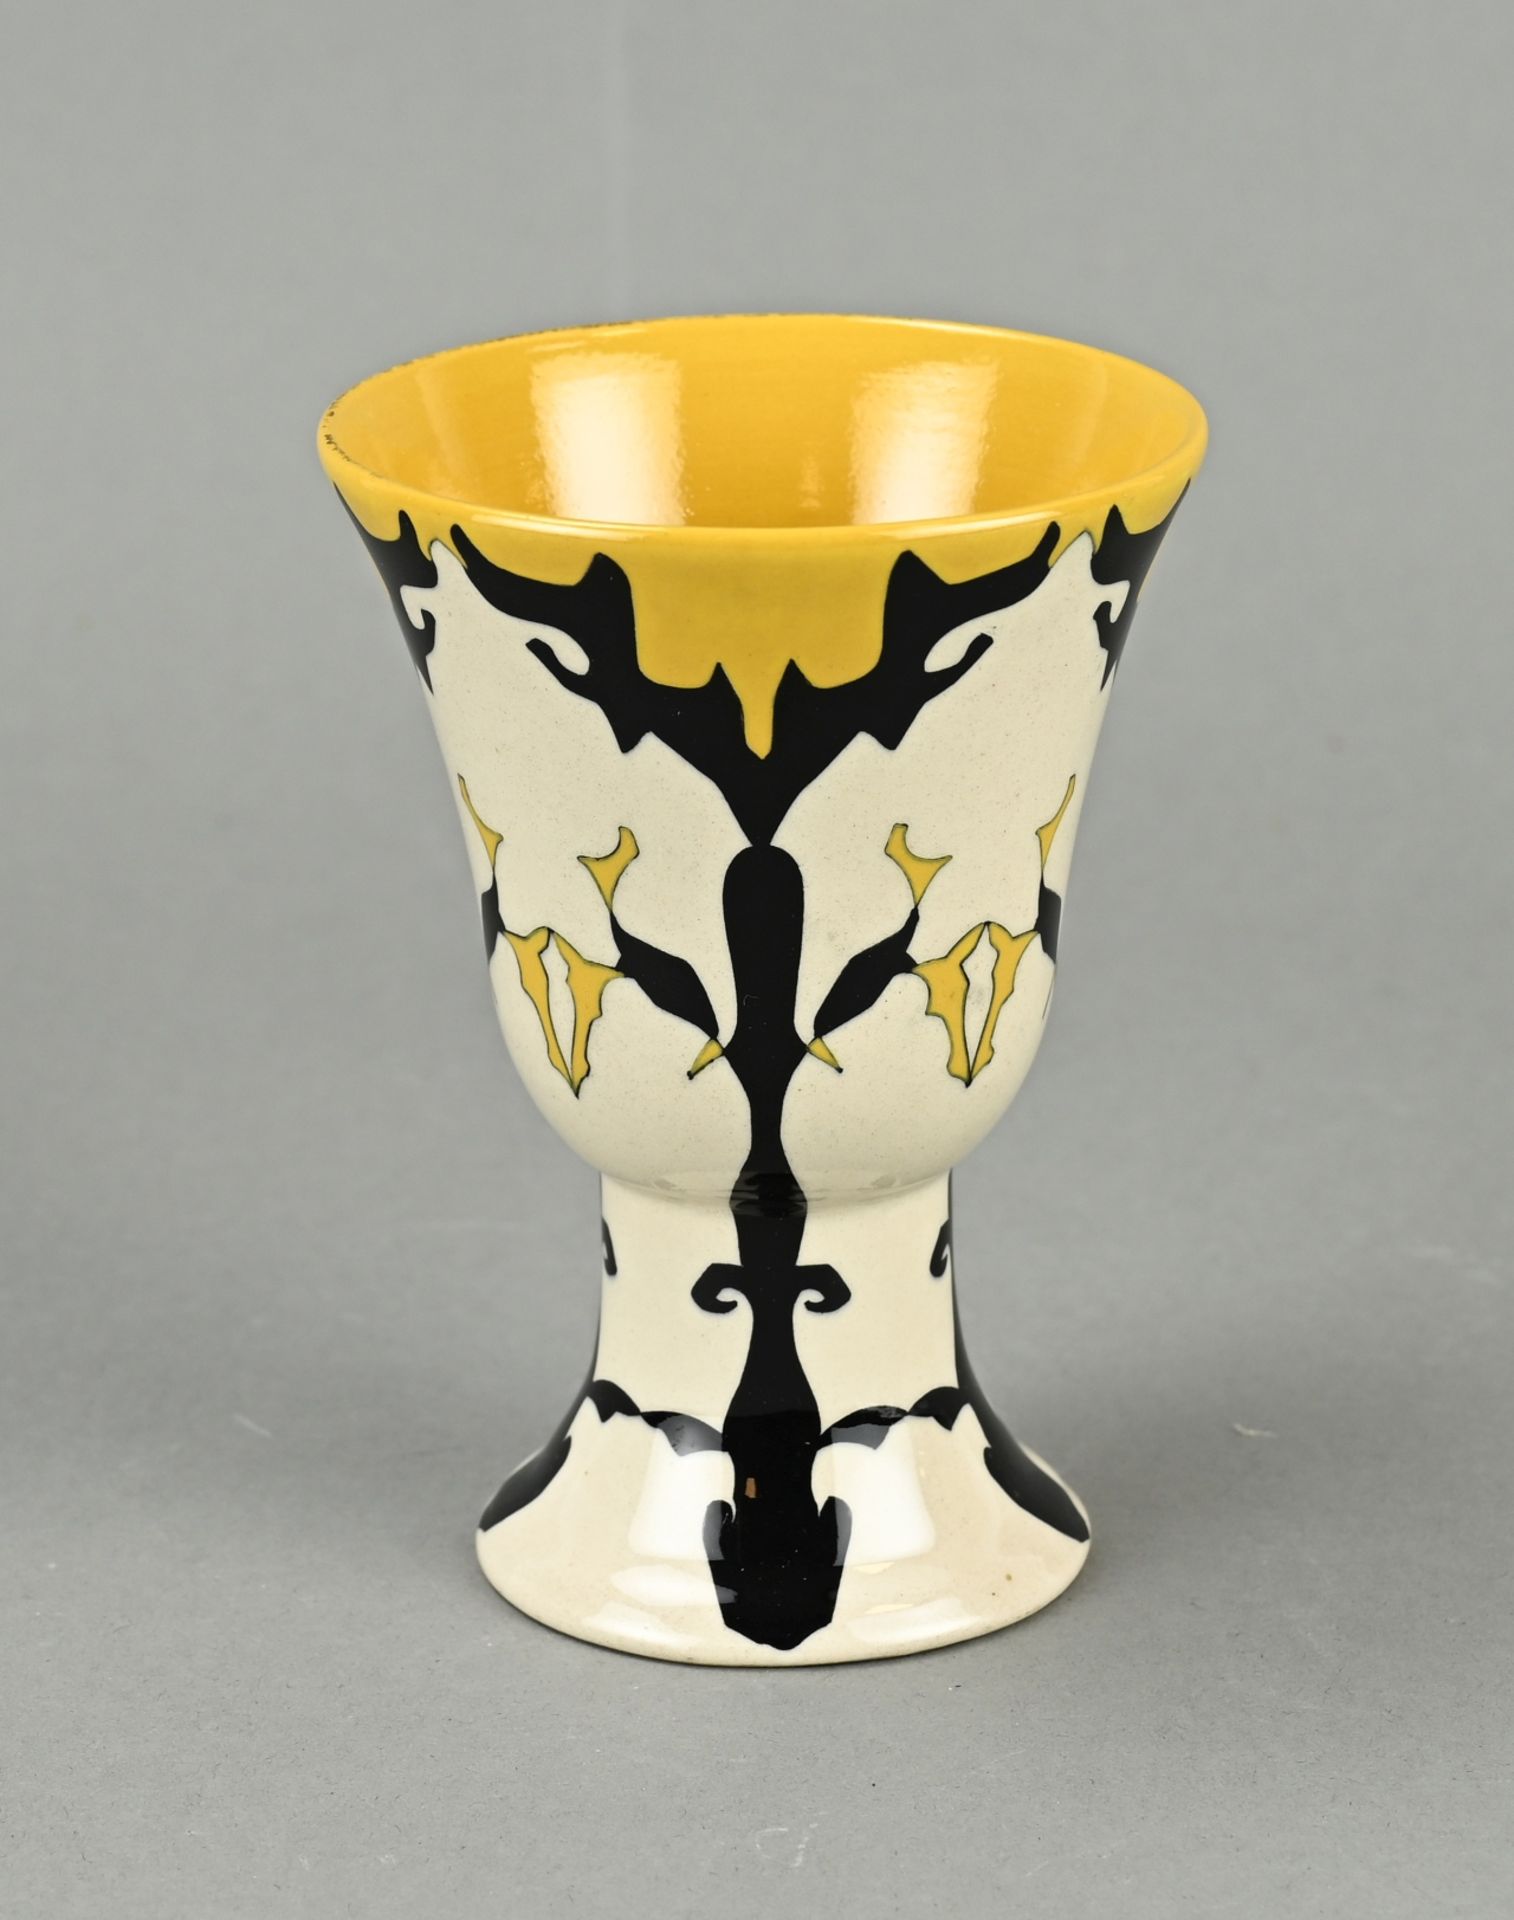 Antique Colenbrander vase, H 12.6 cm.